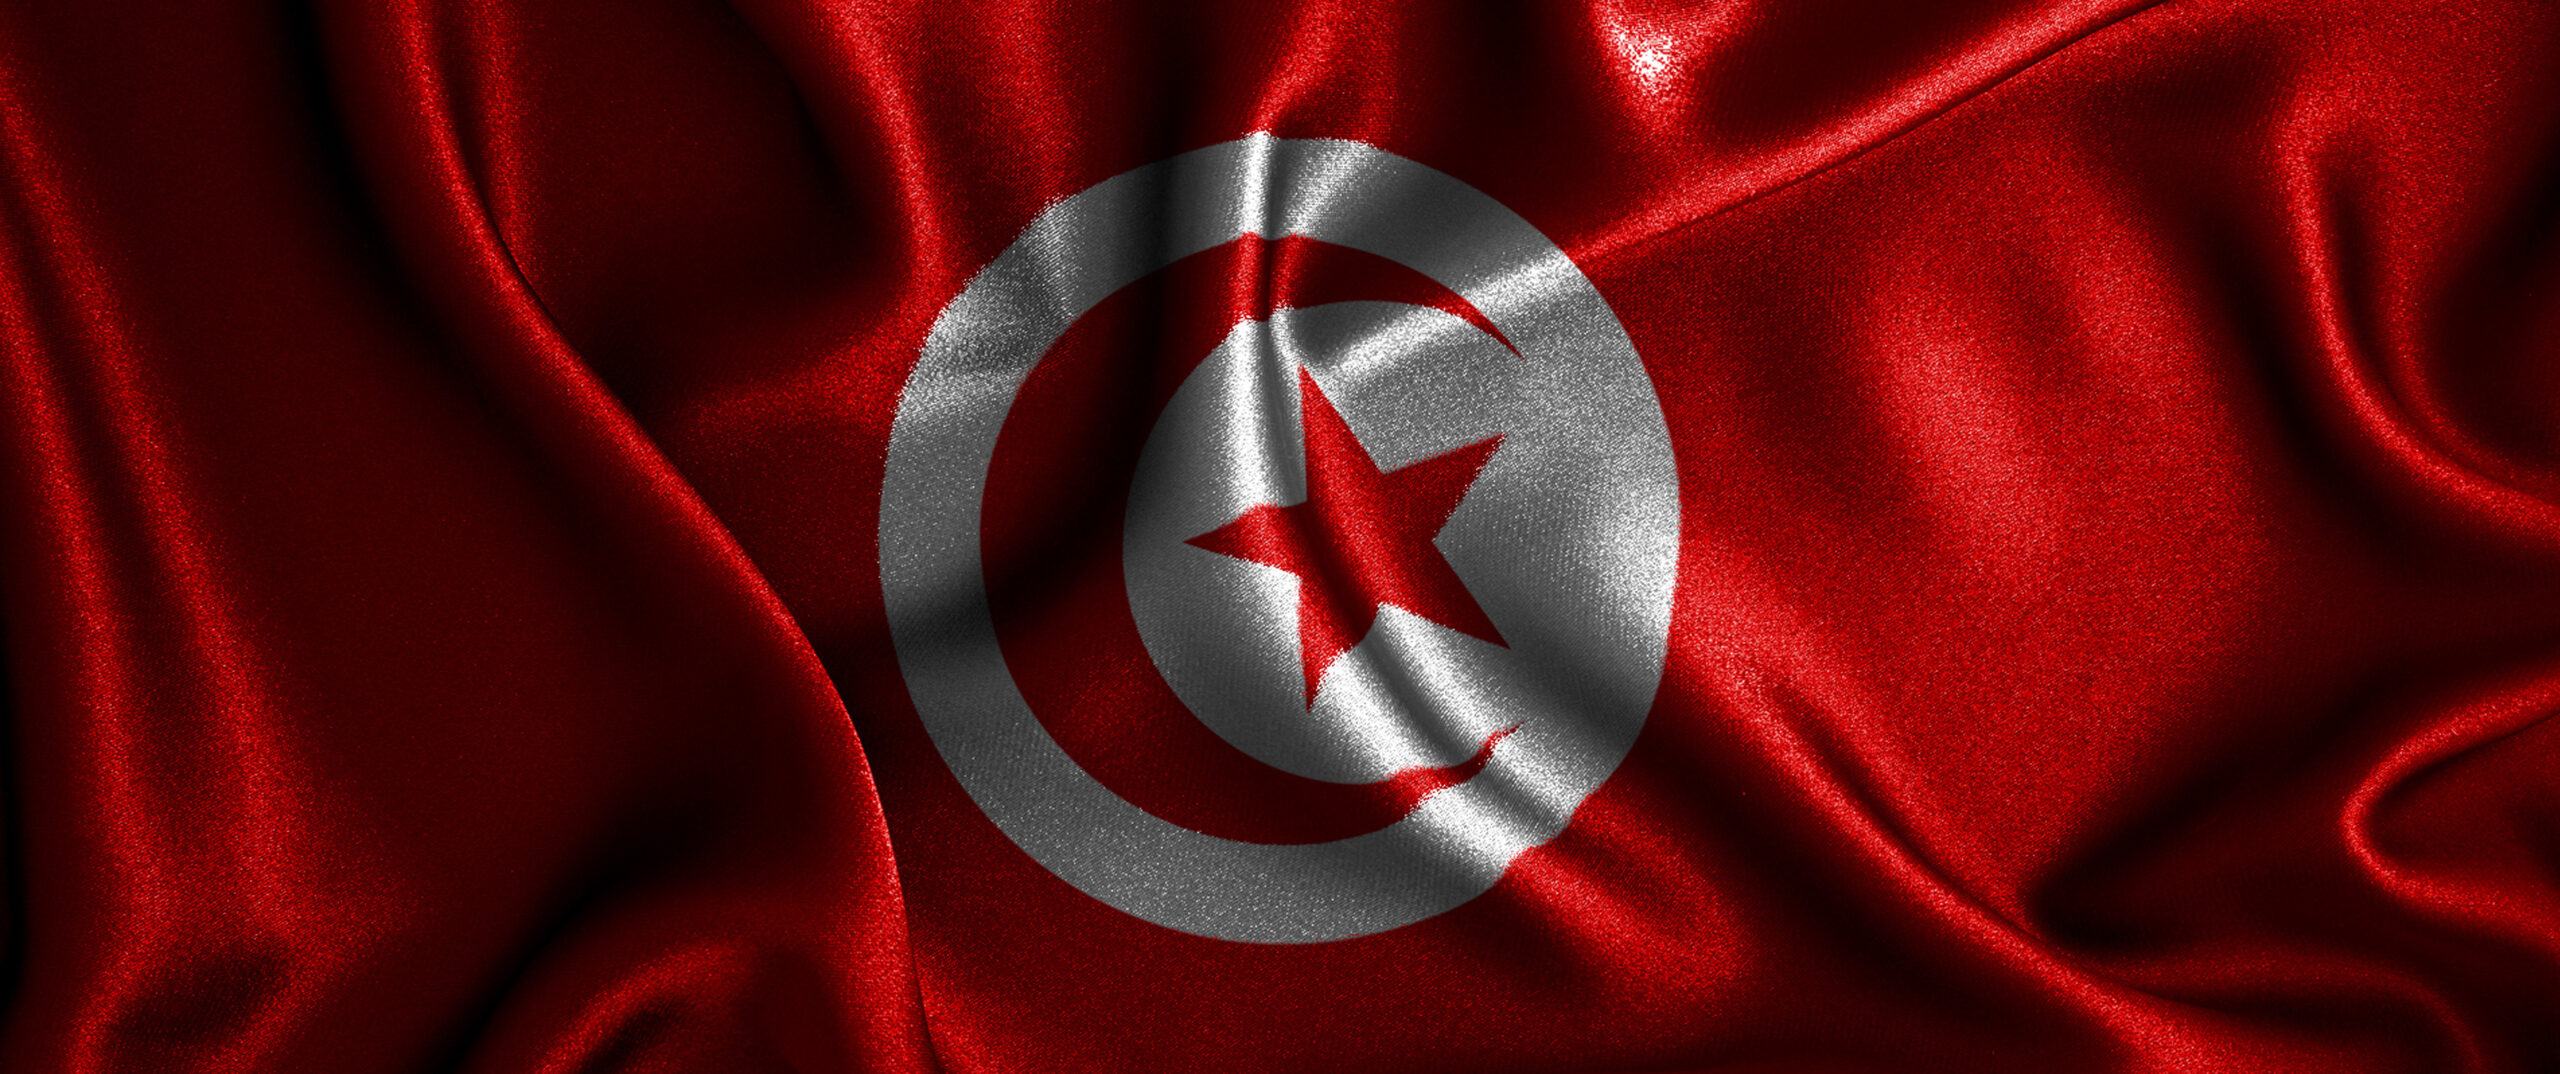 Avocats en danger en Tunisie – Communiqué de presse